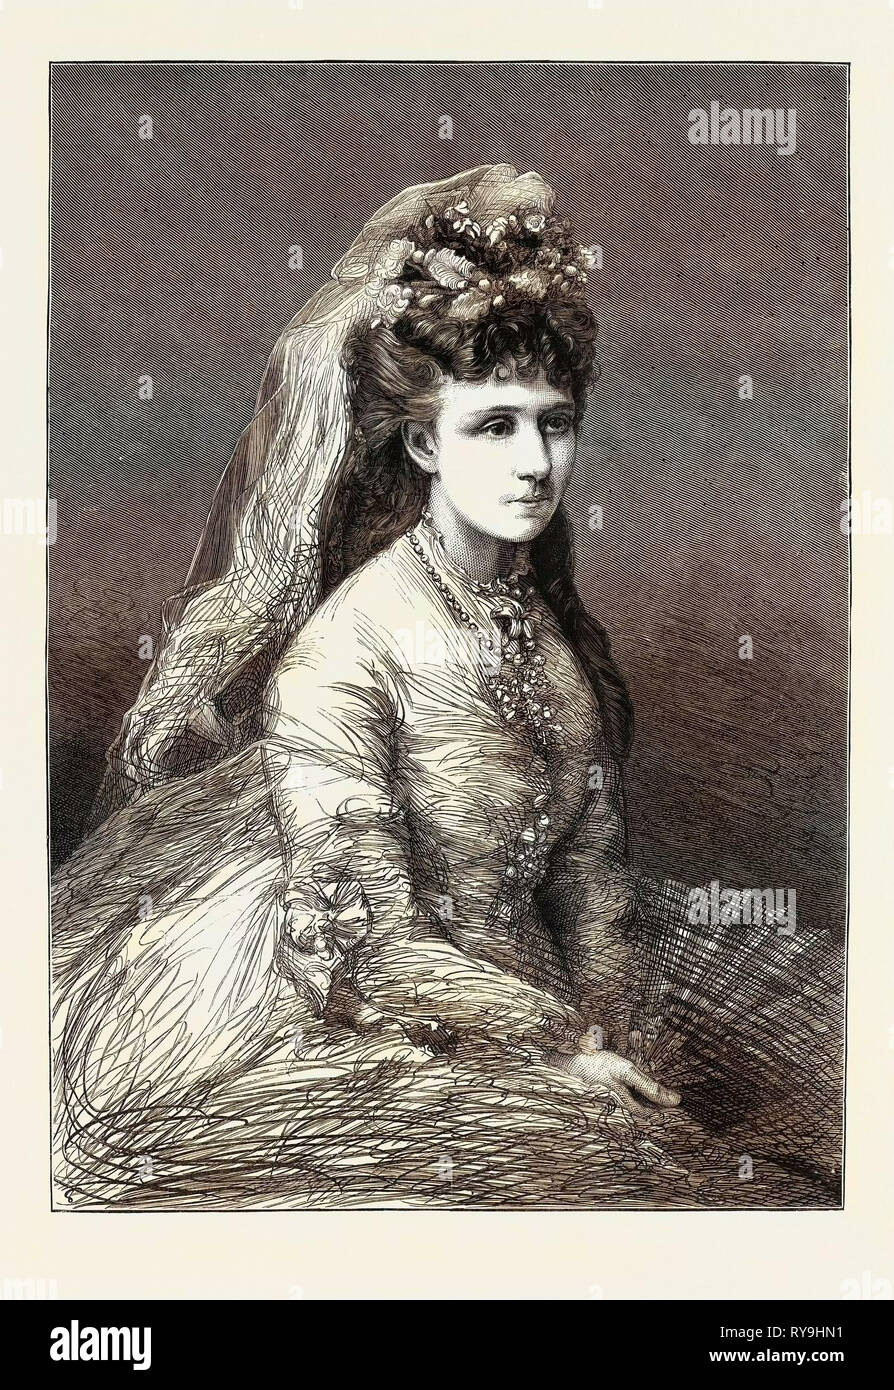 Der Bürgerkrieg in Spanien, der Infanta Doña Maria De Las Nieves, Ehefrau von Don Alphonso, der gemeinhin als Doï 'a Blanca, die wagenliste Führer bekannt Stockfoto